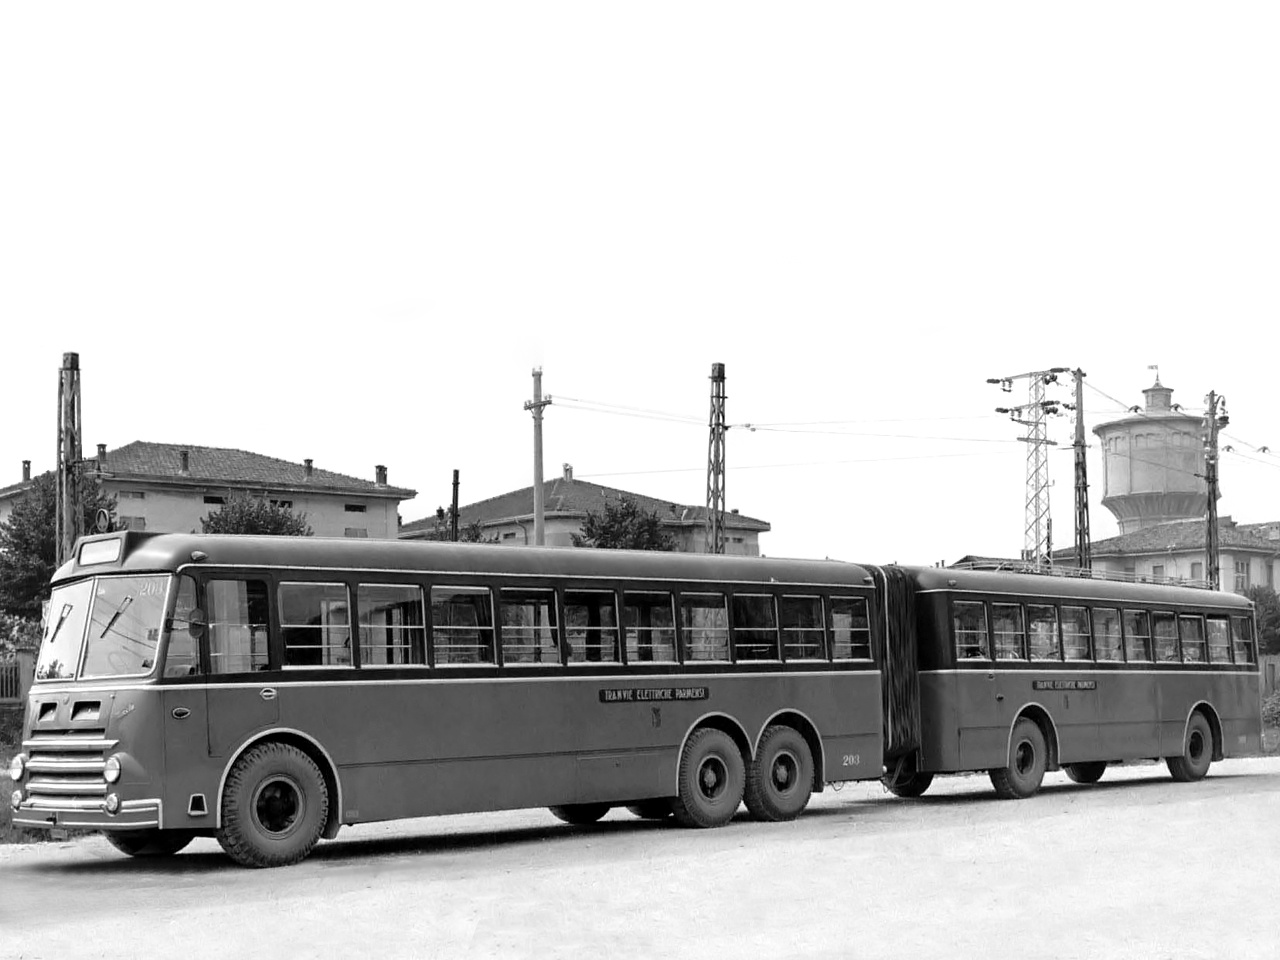 Az Alfa Romeo nemcsak távolsági buszokat gyártott, hanem városiakat is. A gázmotoros, 12,5 literes, 140 lóerős Alfa-motoros, háromtengelyes, 12 méteres és az öttengelyes, 22 méteres, csuklós A 140-esből 1953 és 1958 között összesen 137 darabot gyártottak három üzemegységben, a milánói ATM közlekedési vállalat részére.